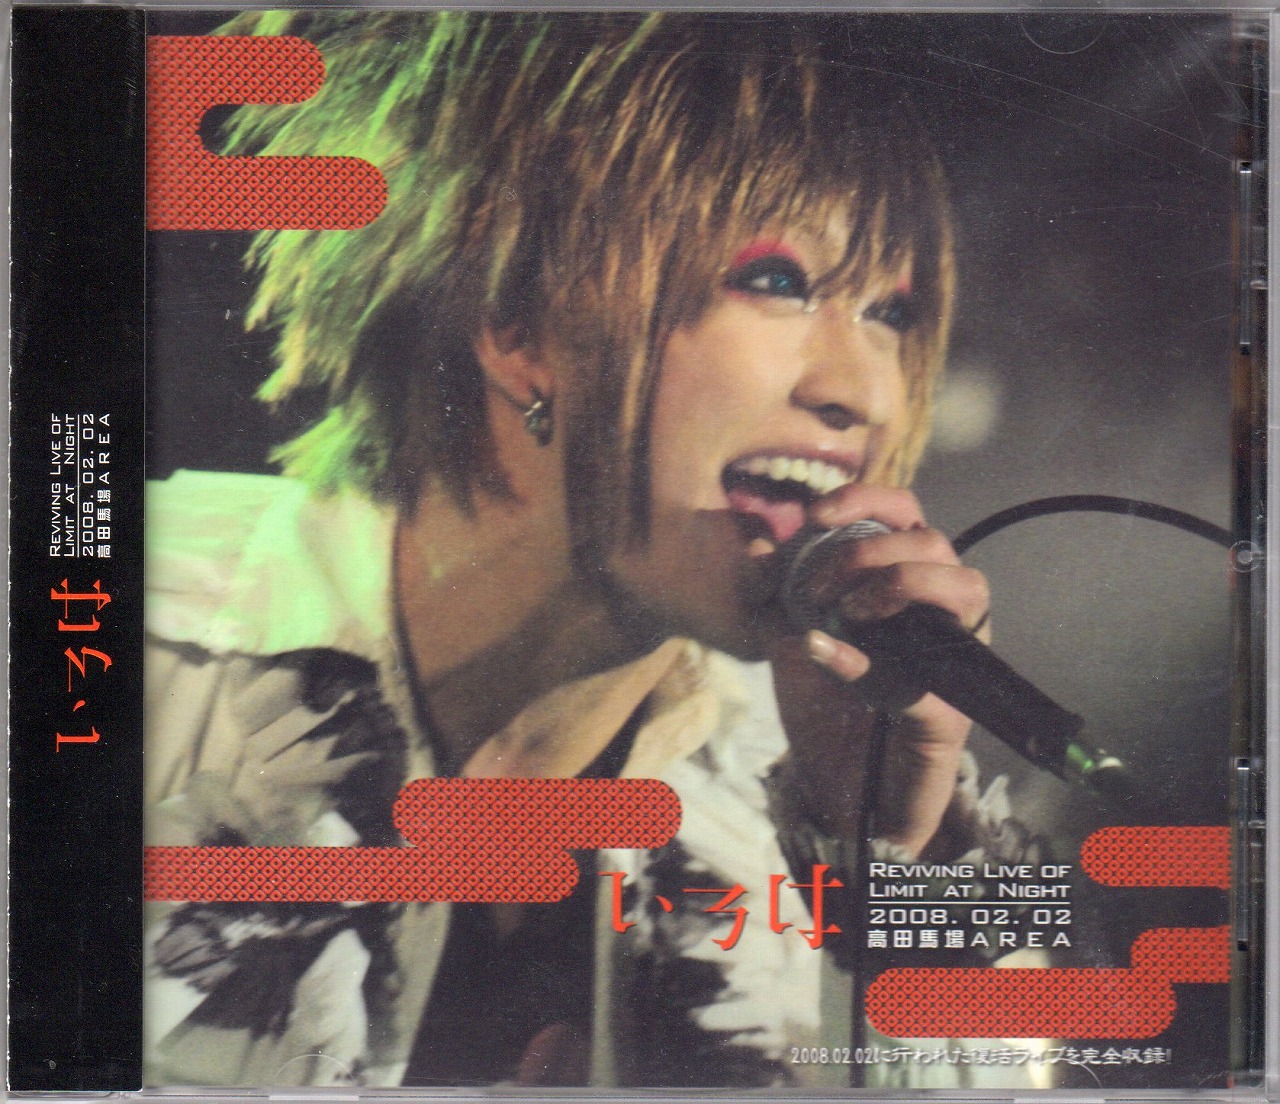 イロハ の DVD REVIVING LIVE OF LIMIT AT NIGHT 2008.02.02 高田馬場AREA